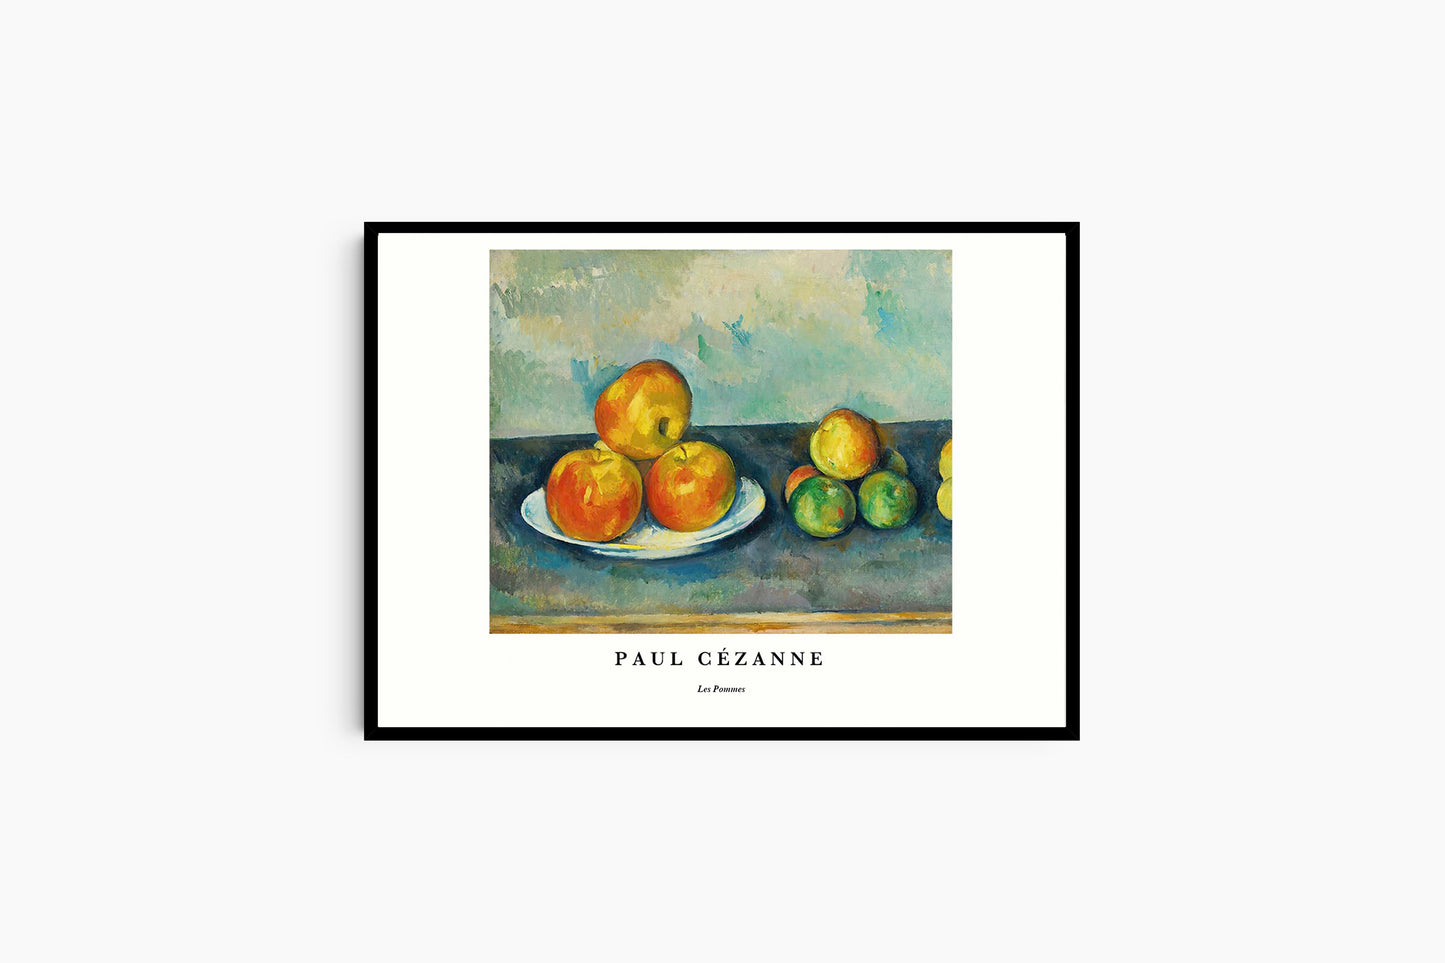 Paul Cézanne - Les Pommes Poster